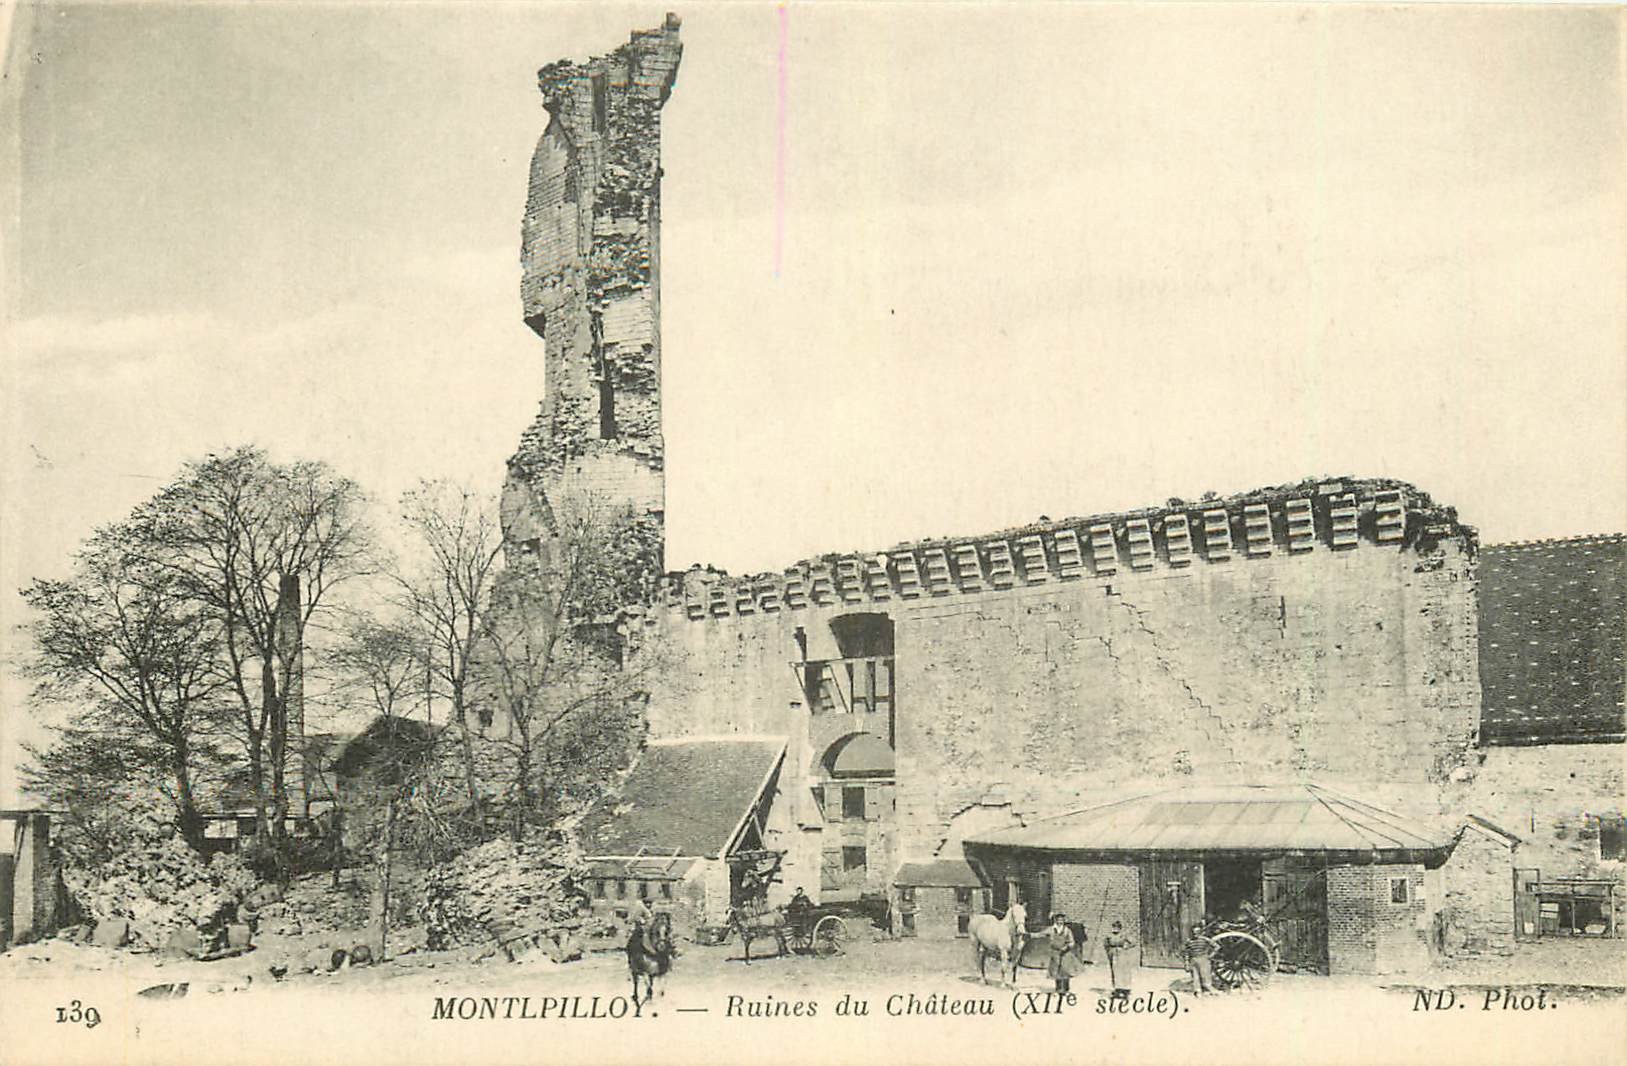 60 MONTLPILLOY MONTEPILLOY. Ruines du Château avec chevaux